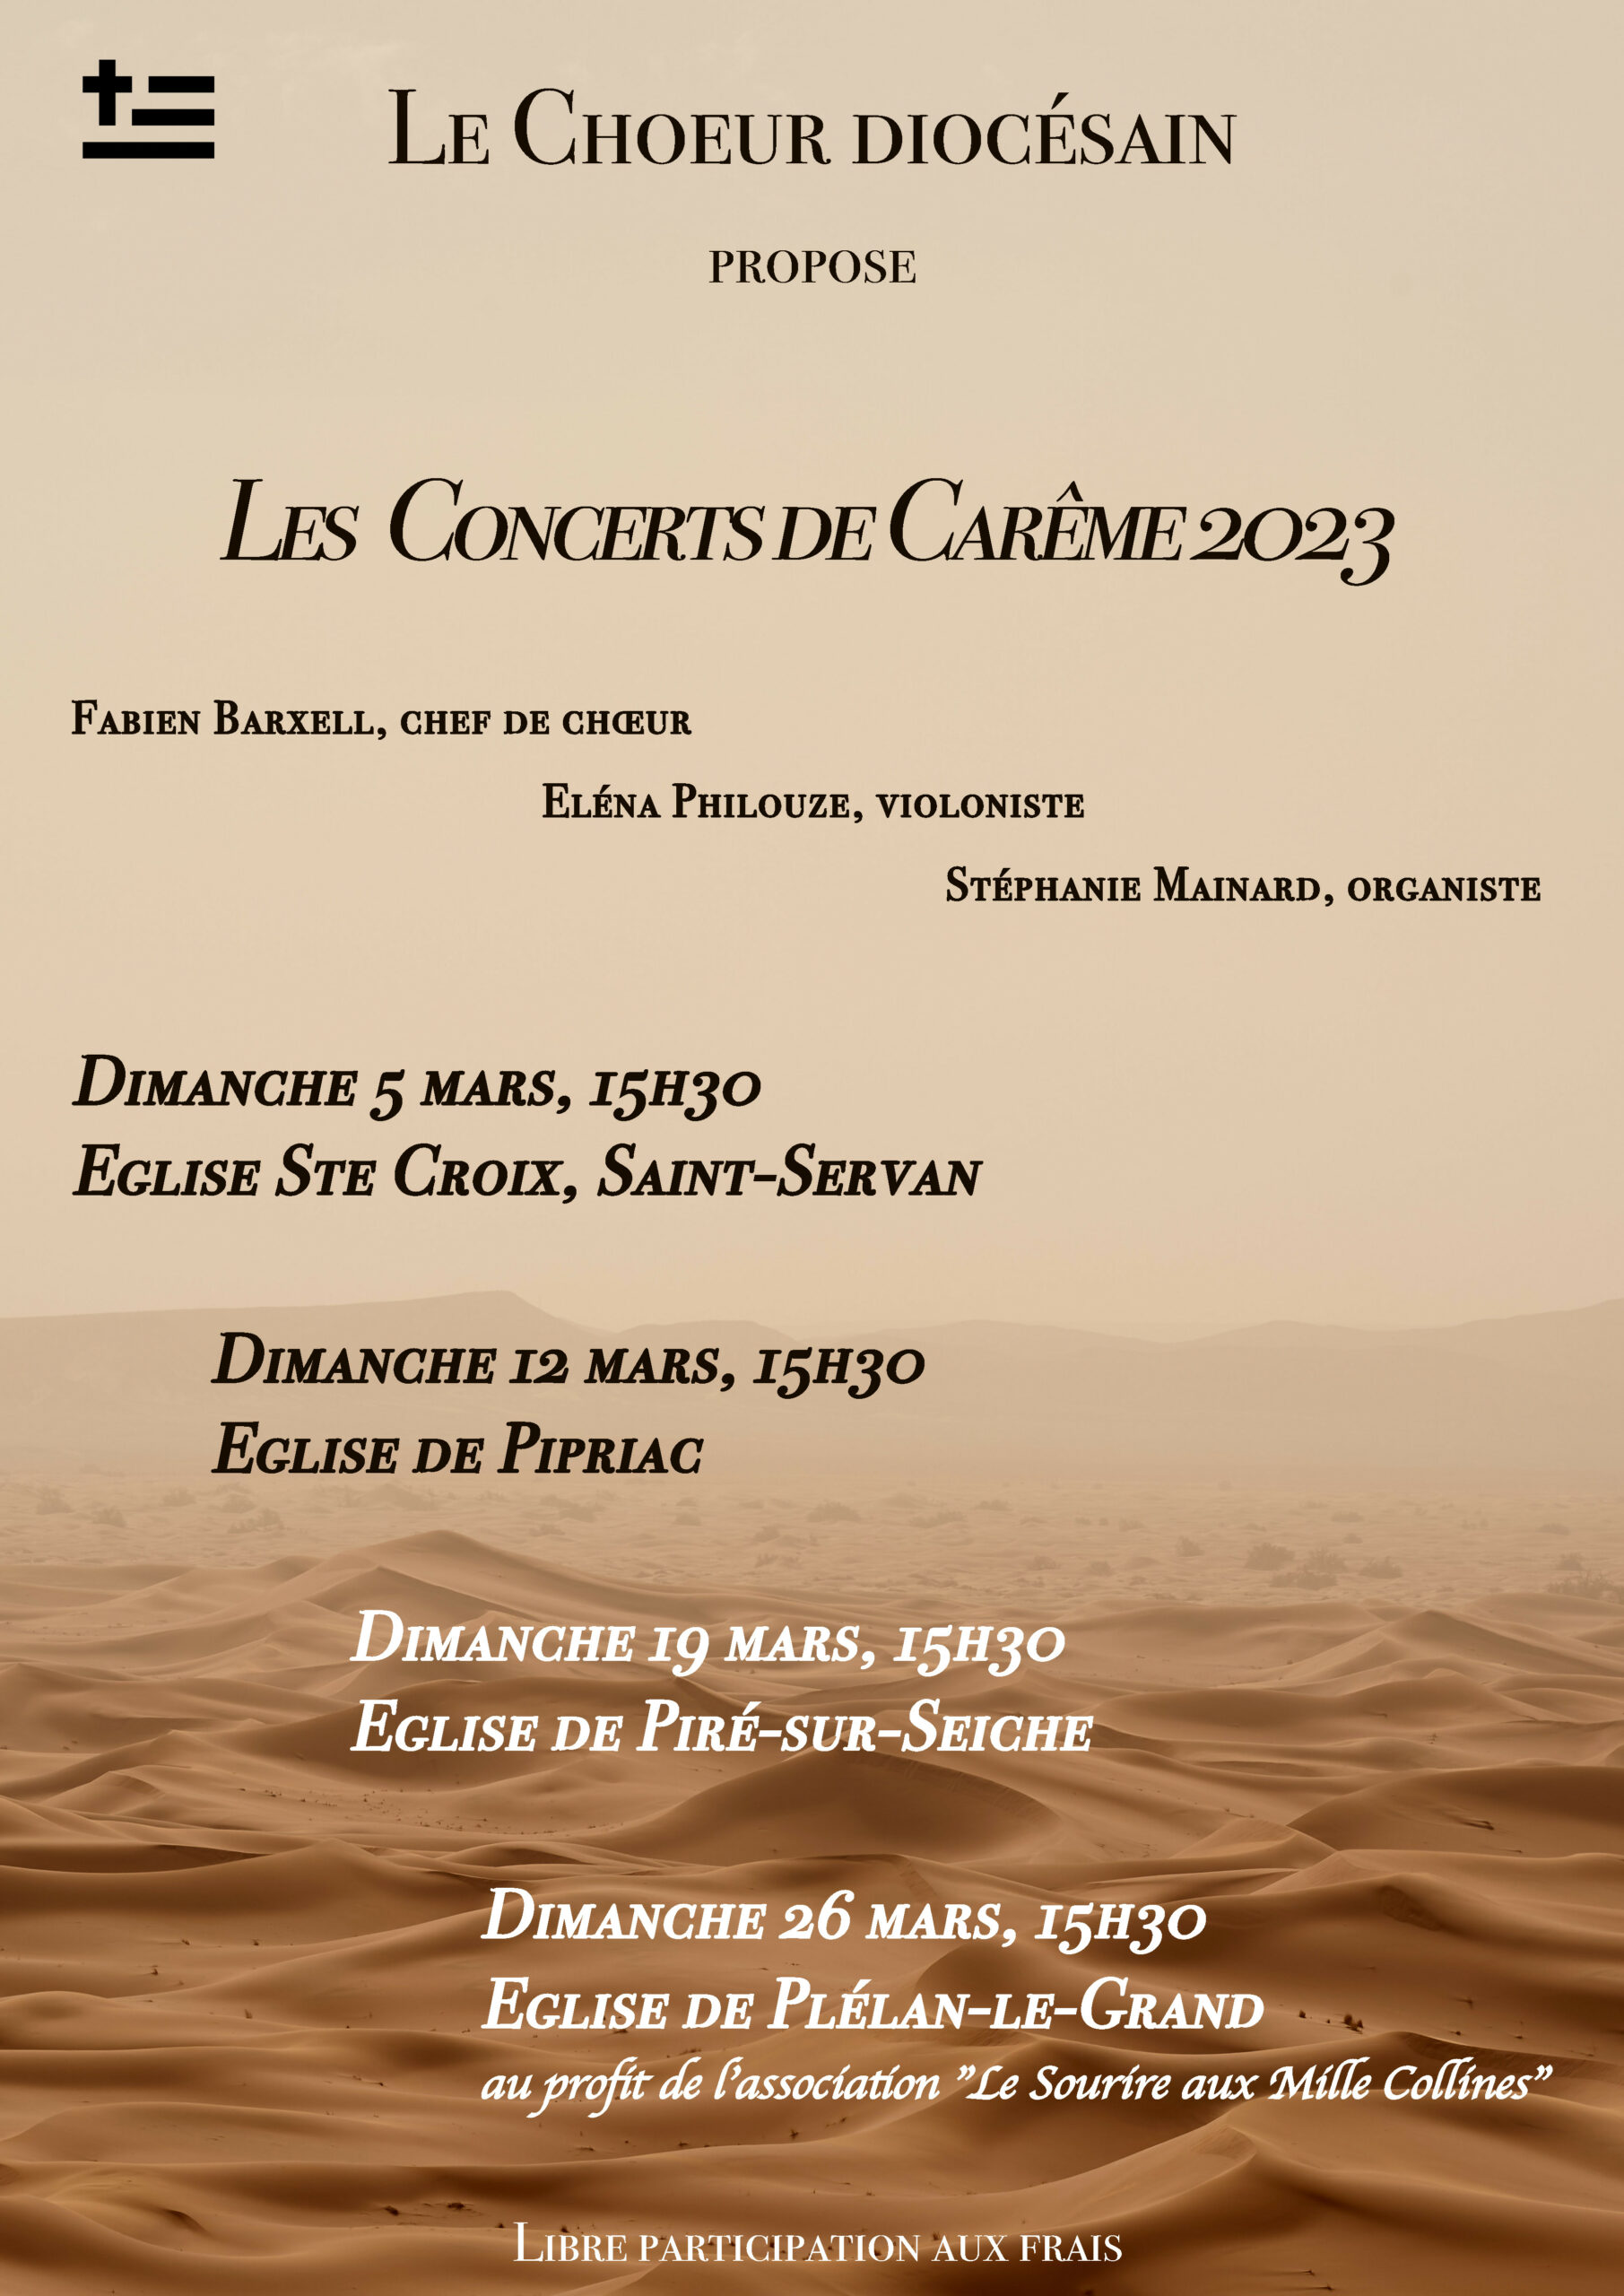 Le chœur diocésain d'Ille et Vilaine en concert, carême 2023